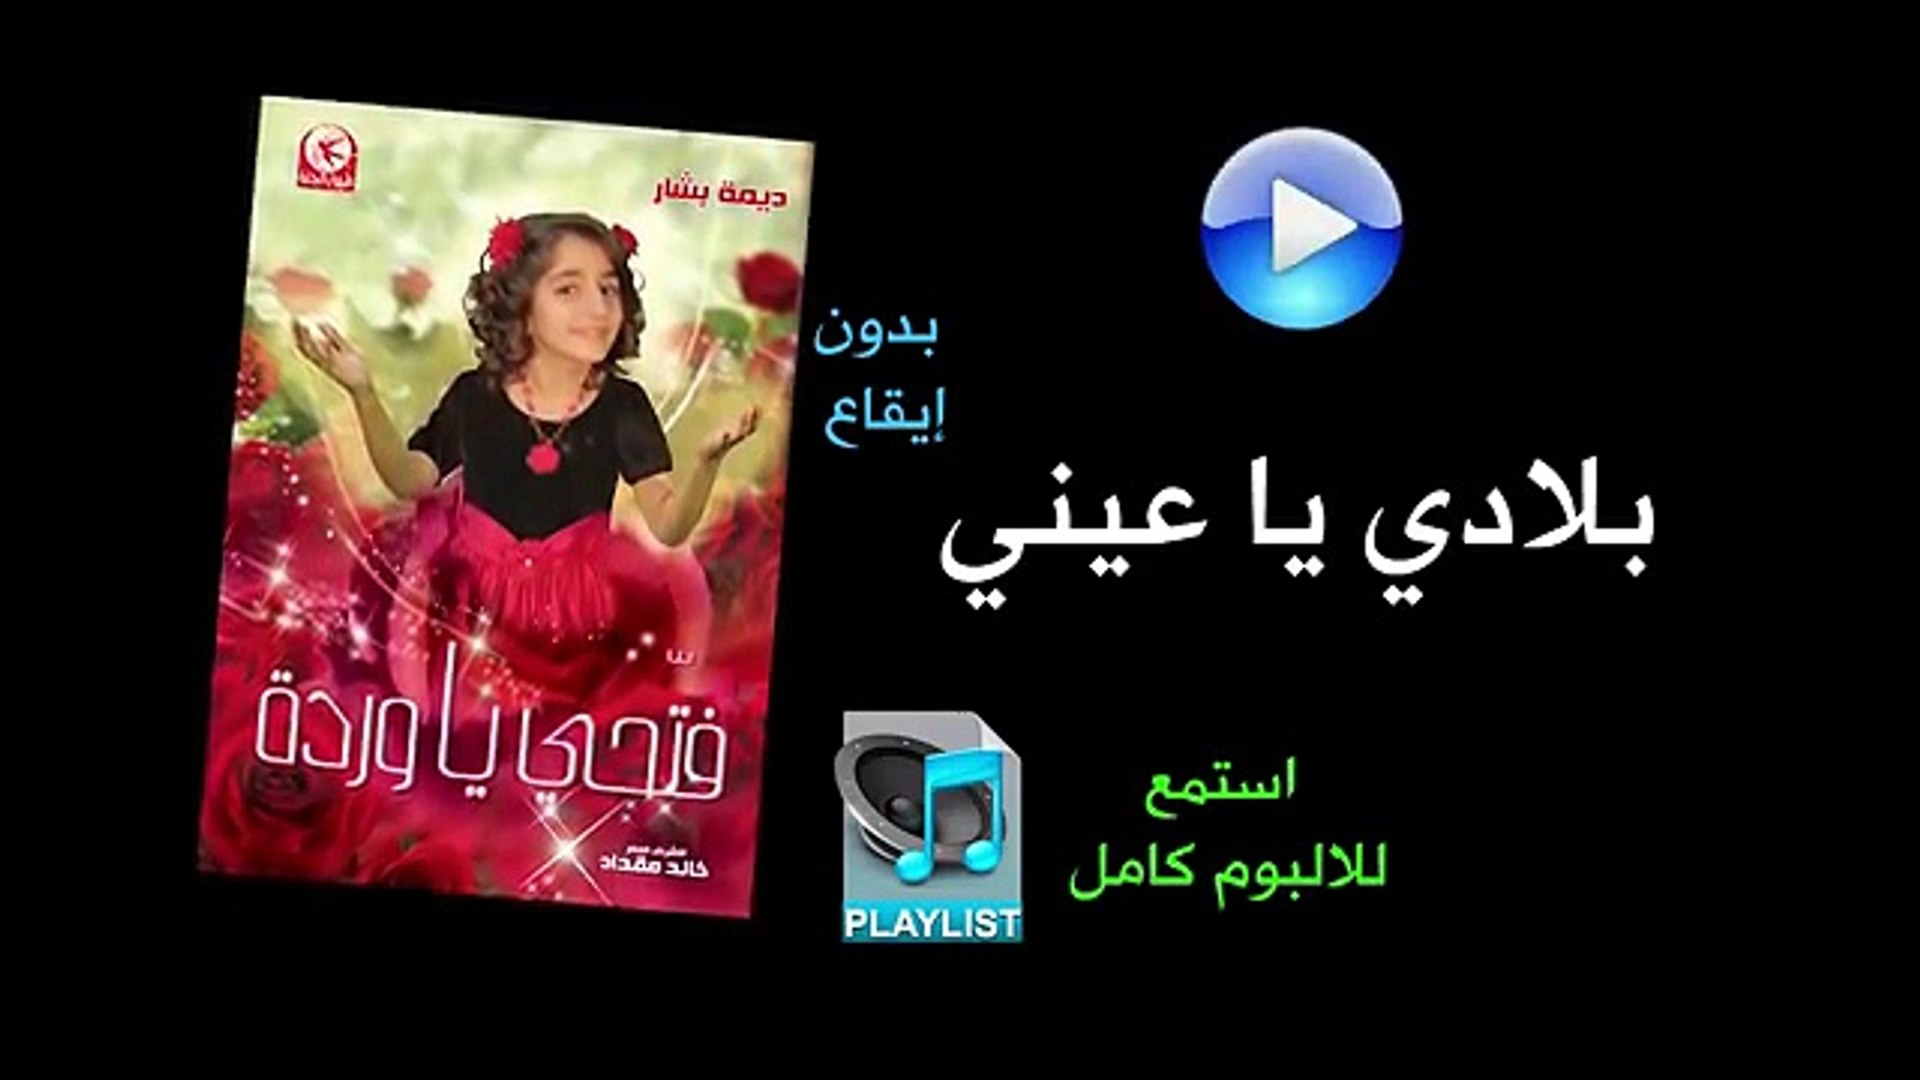 بلادي يا عيني ( بدون ايقاع ) - البوم فتحي يا وردة - video Dailymotion